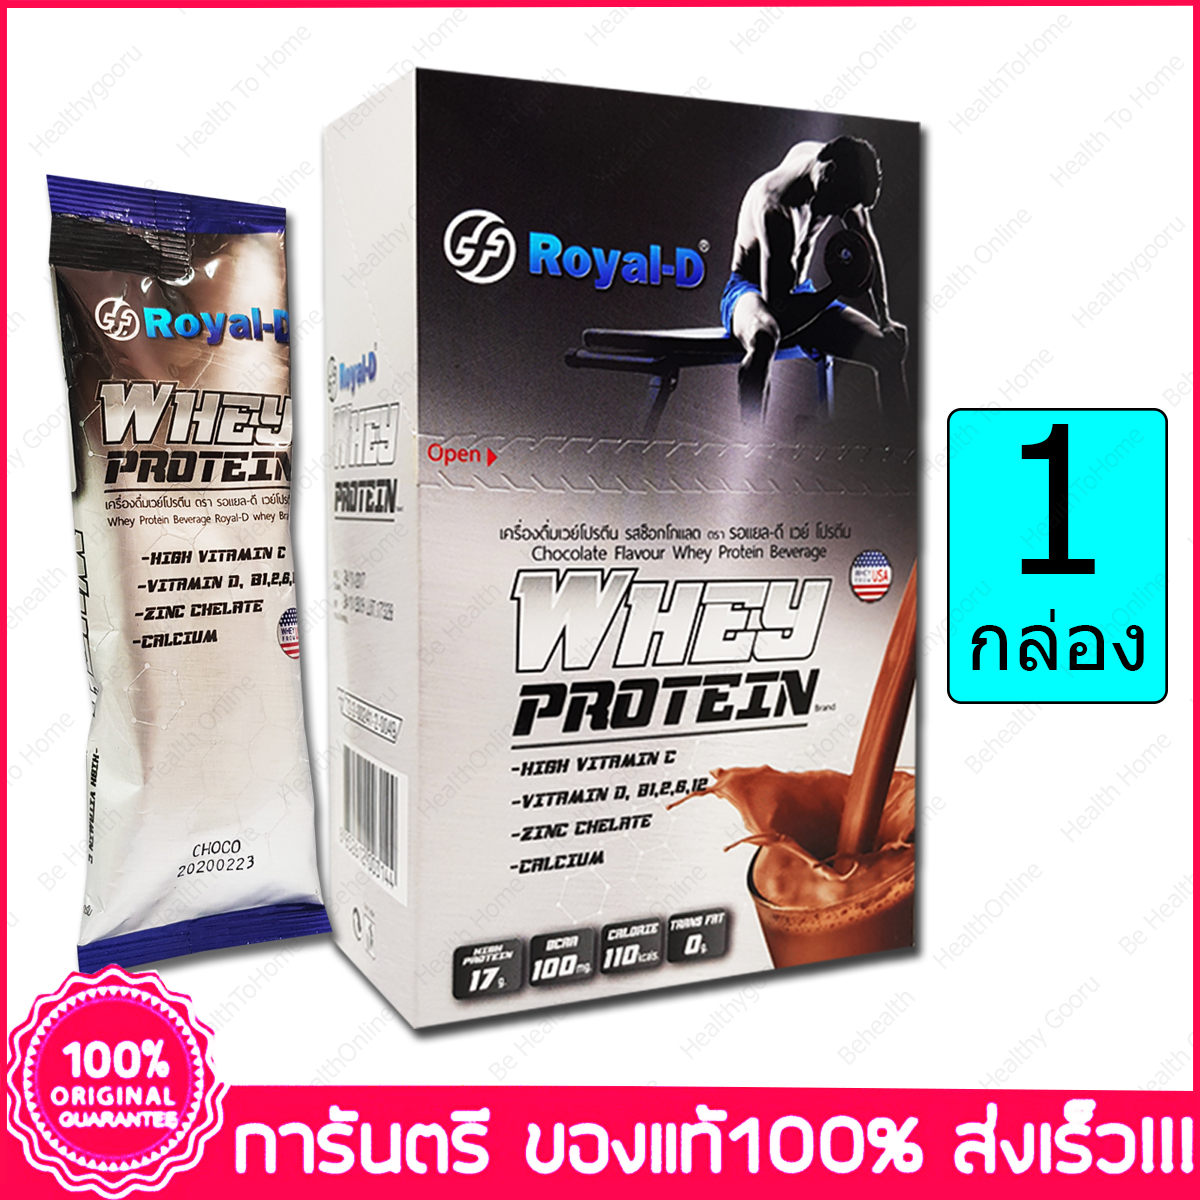 Whey Protein Chocolate Flavor ROYAL-D 30g. X 5 ซอง (Sach.) X 1 กล่อง (Box)